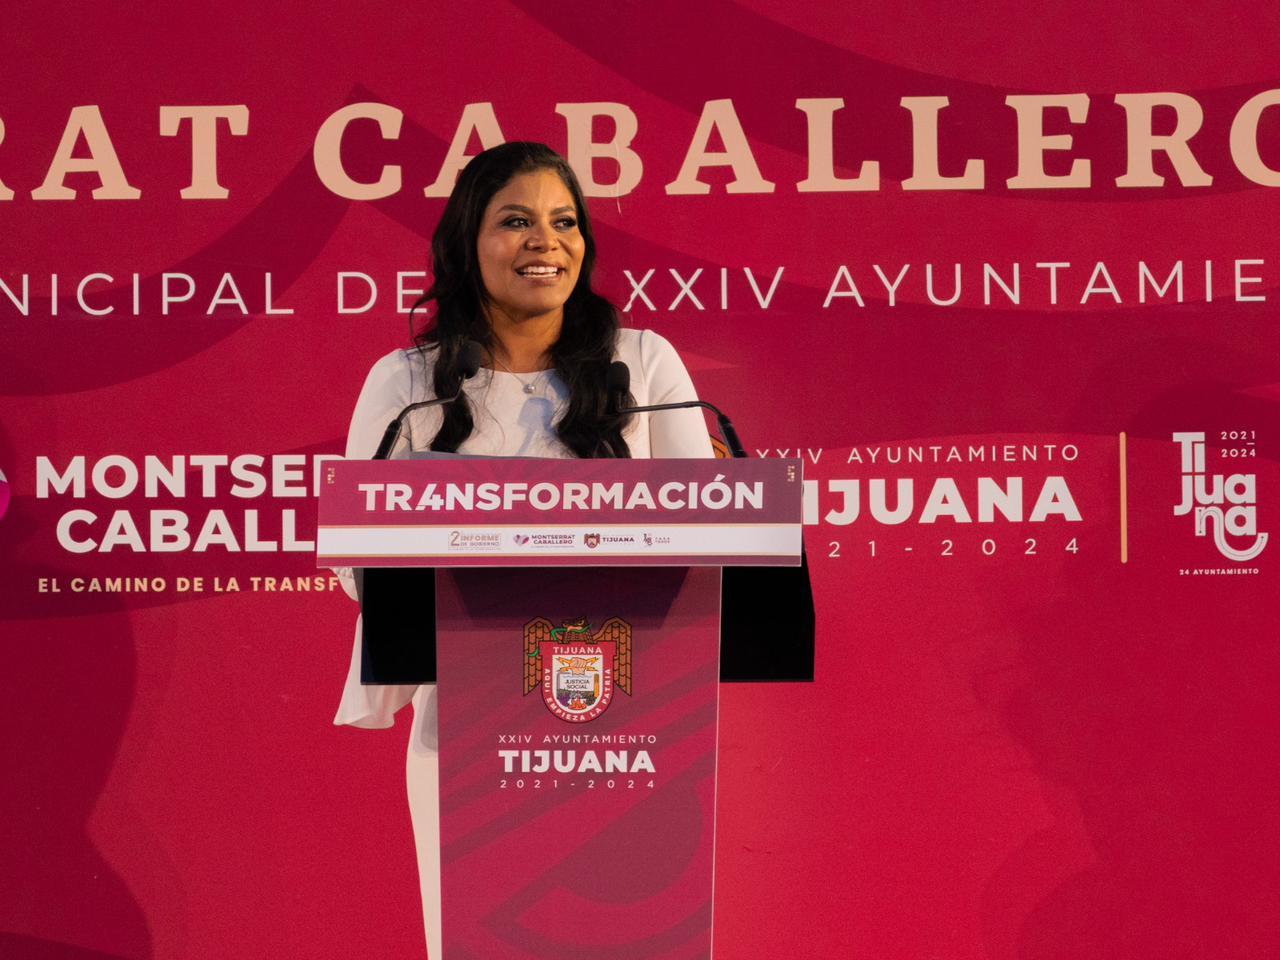 Una nueva historia iniciará en Tijuana, los necesitamos a todas y todos: Montserrat Caballero